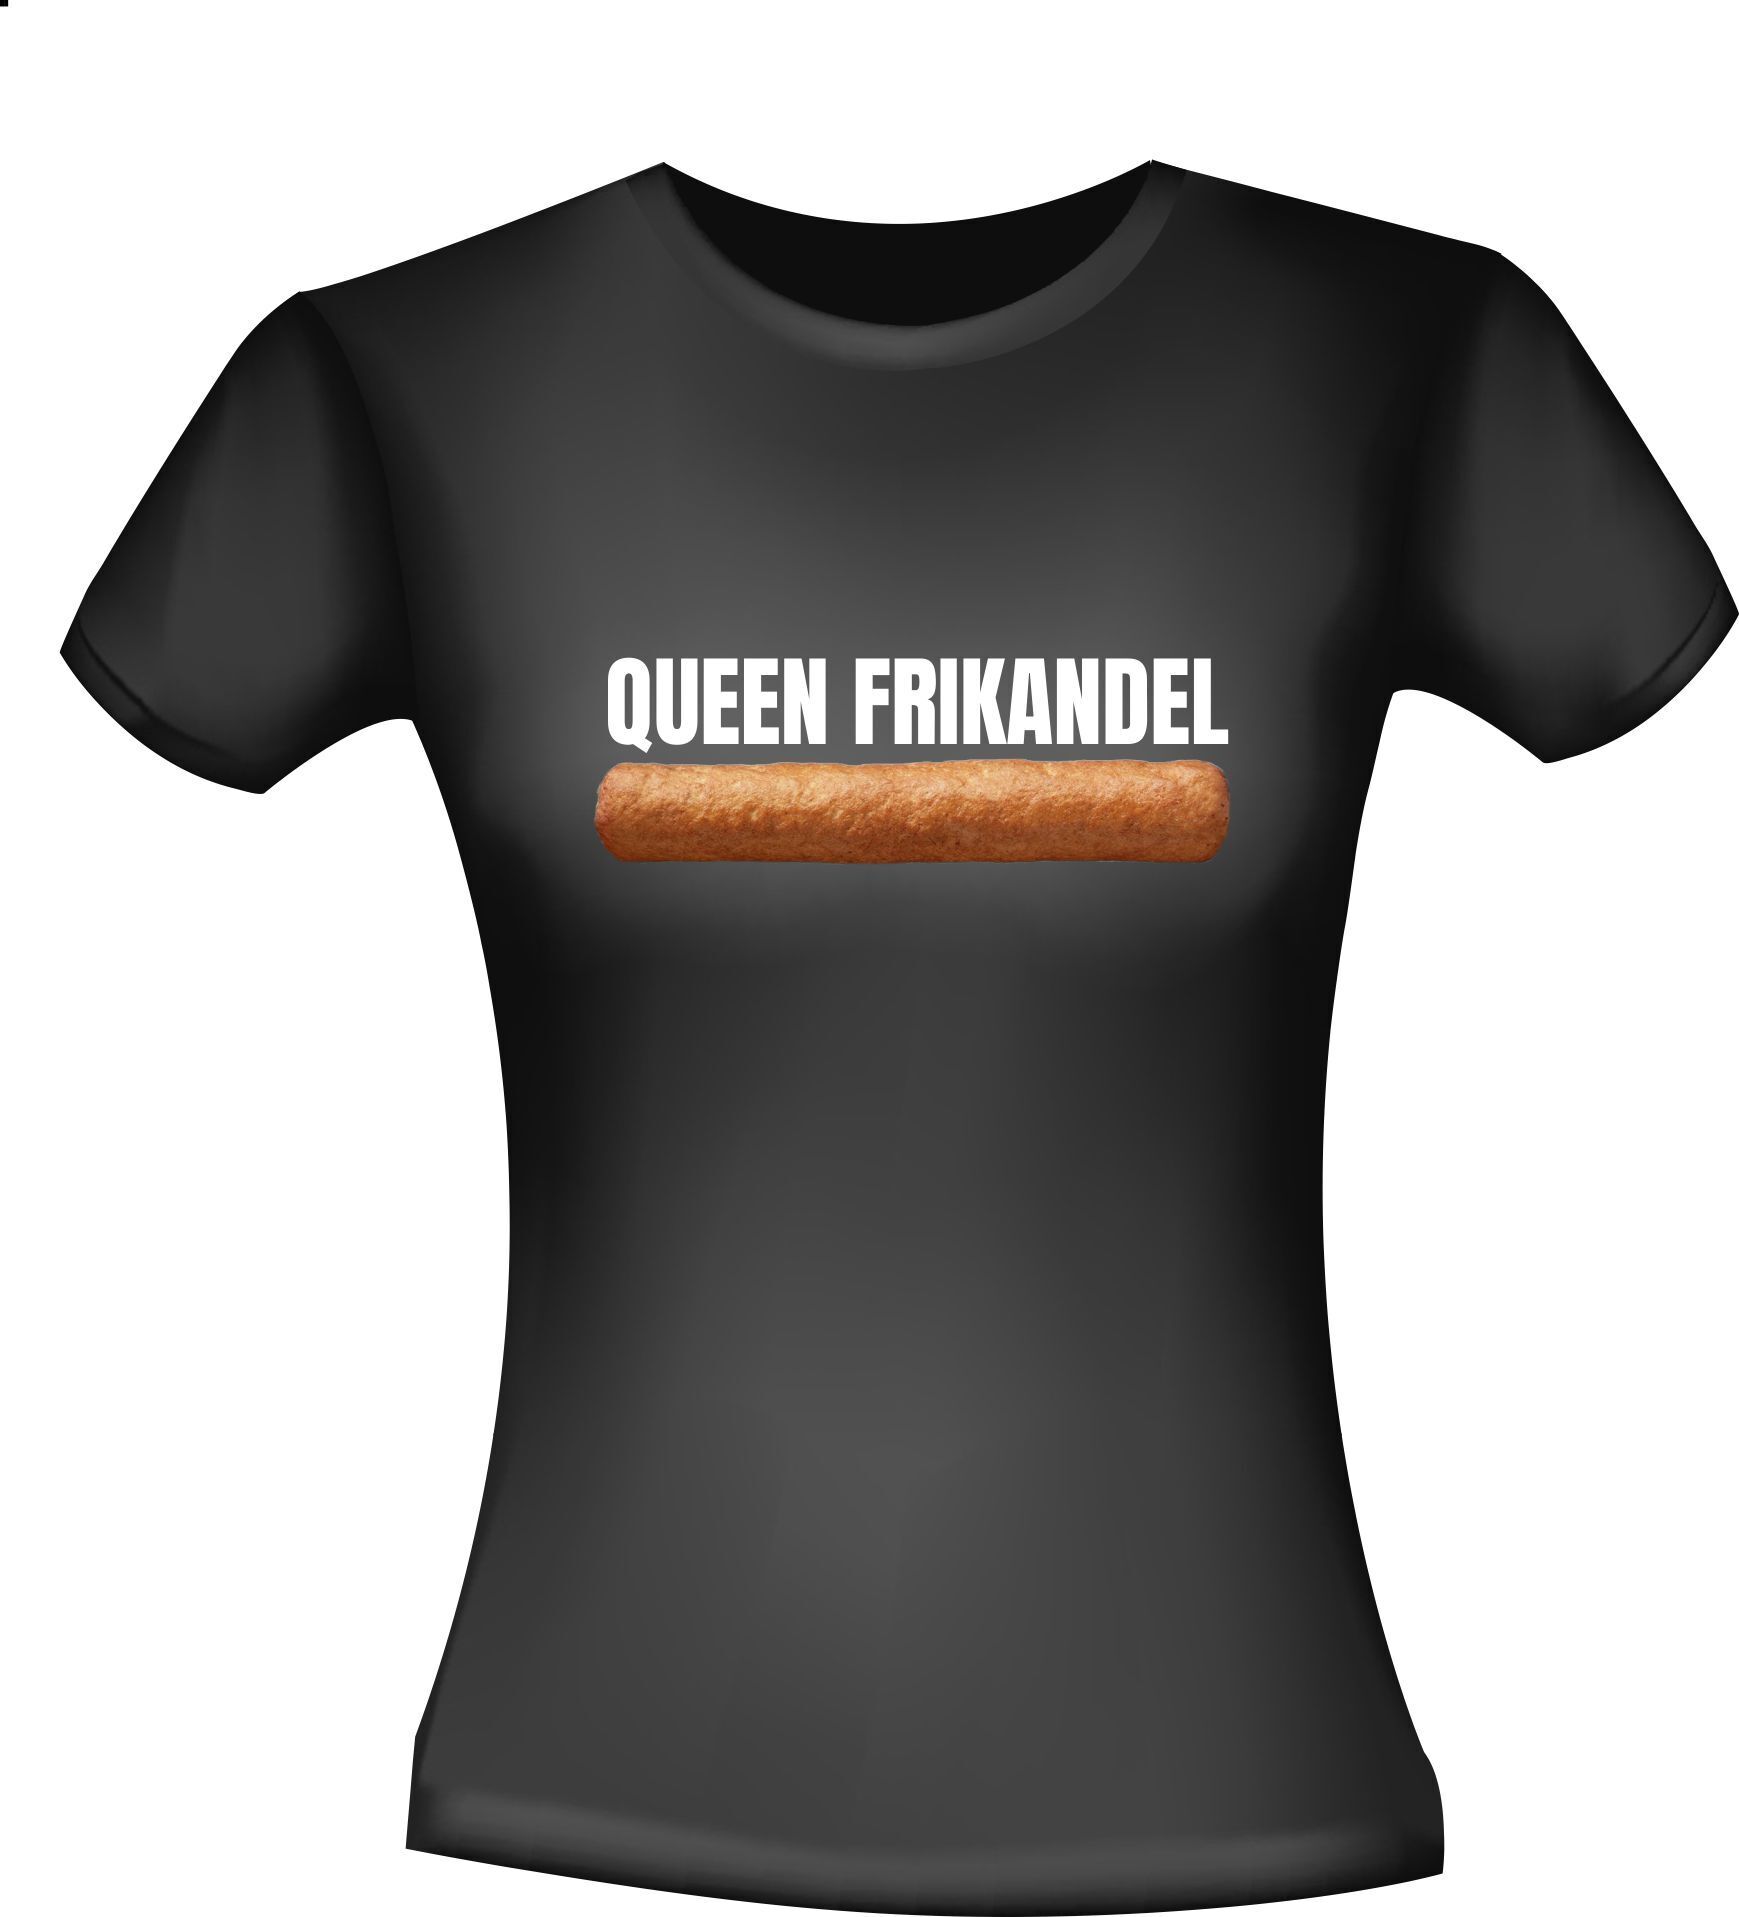 Shirtje voor Queen frikandel dames die van Frikandellen houden